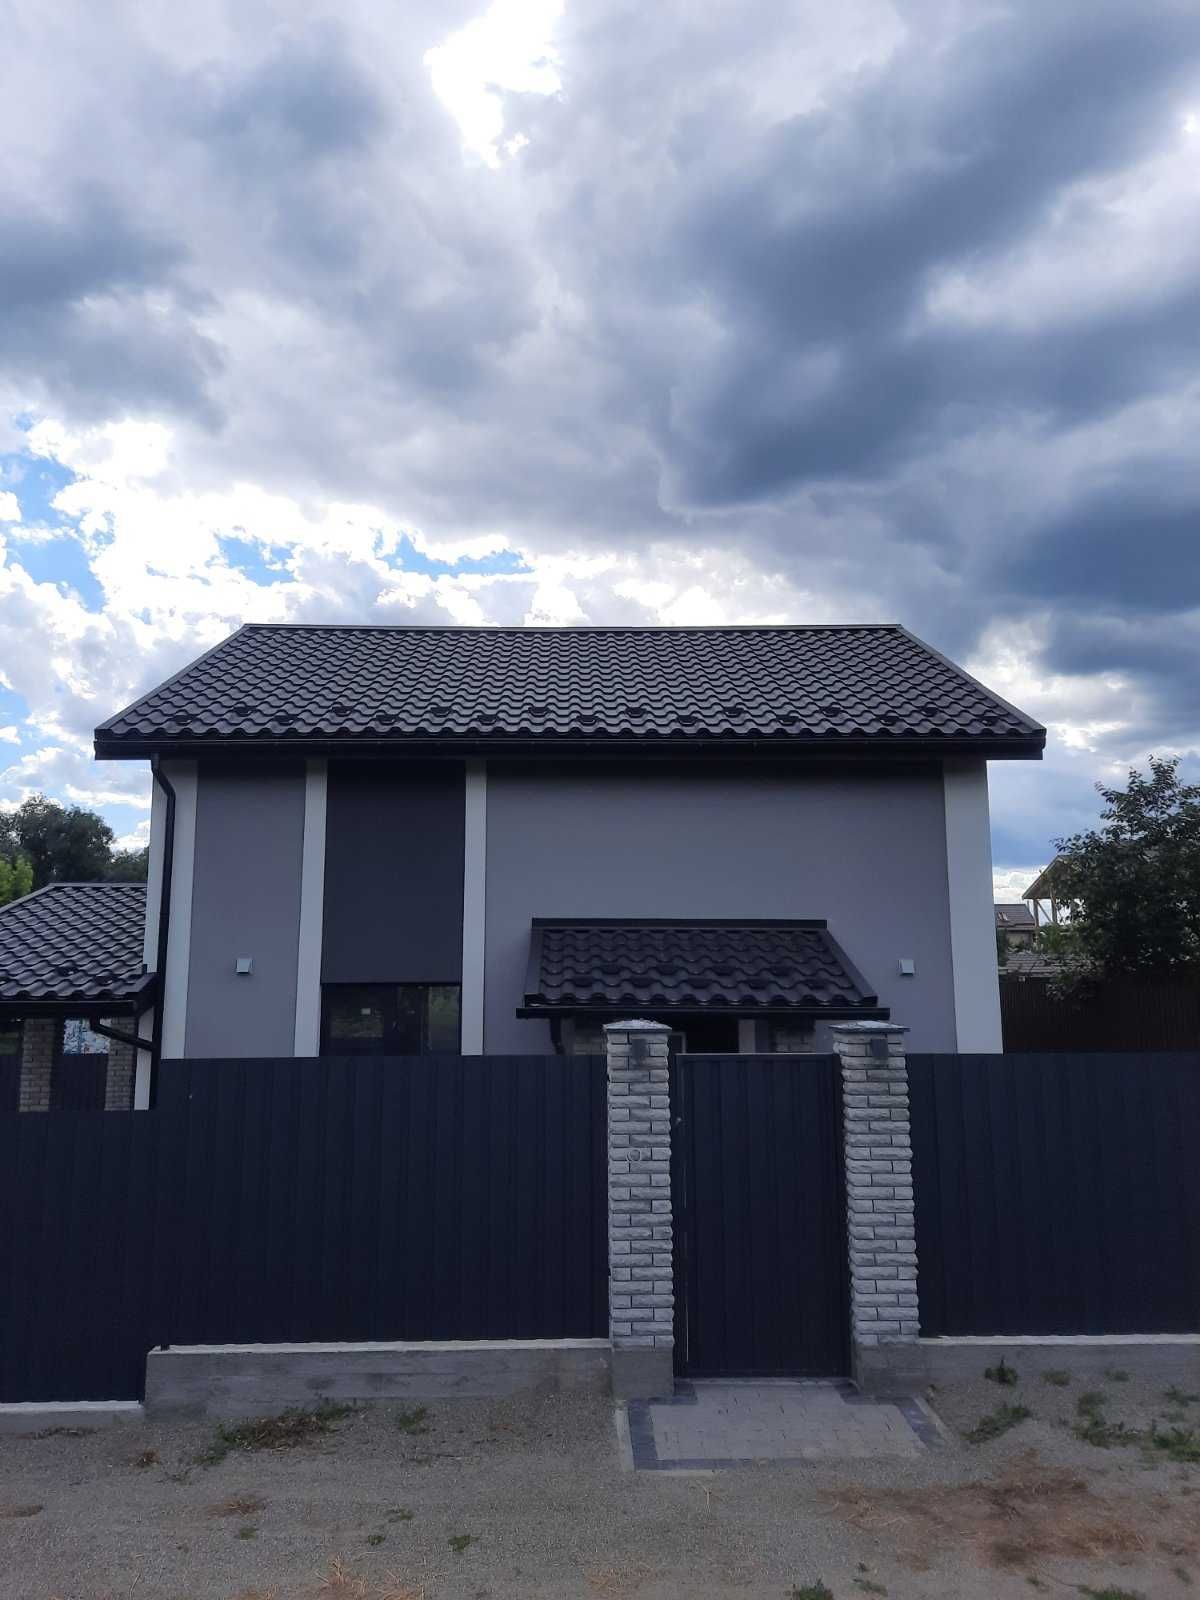 Продажа дома 111.34 м2 на 5 сотках земли в  Гостомеле.